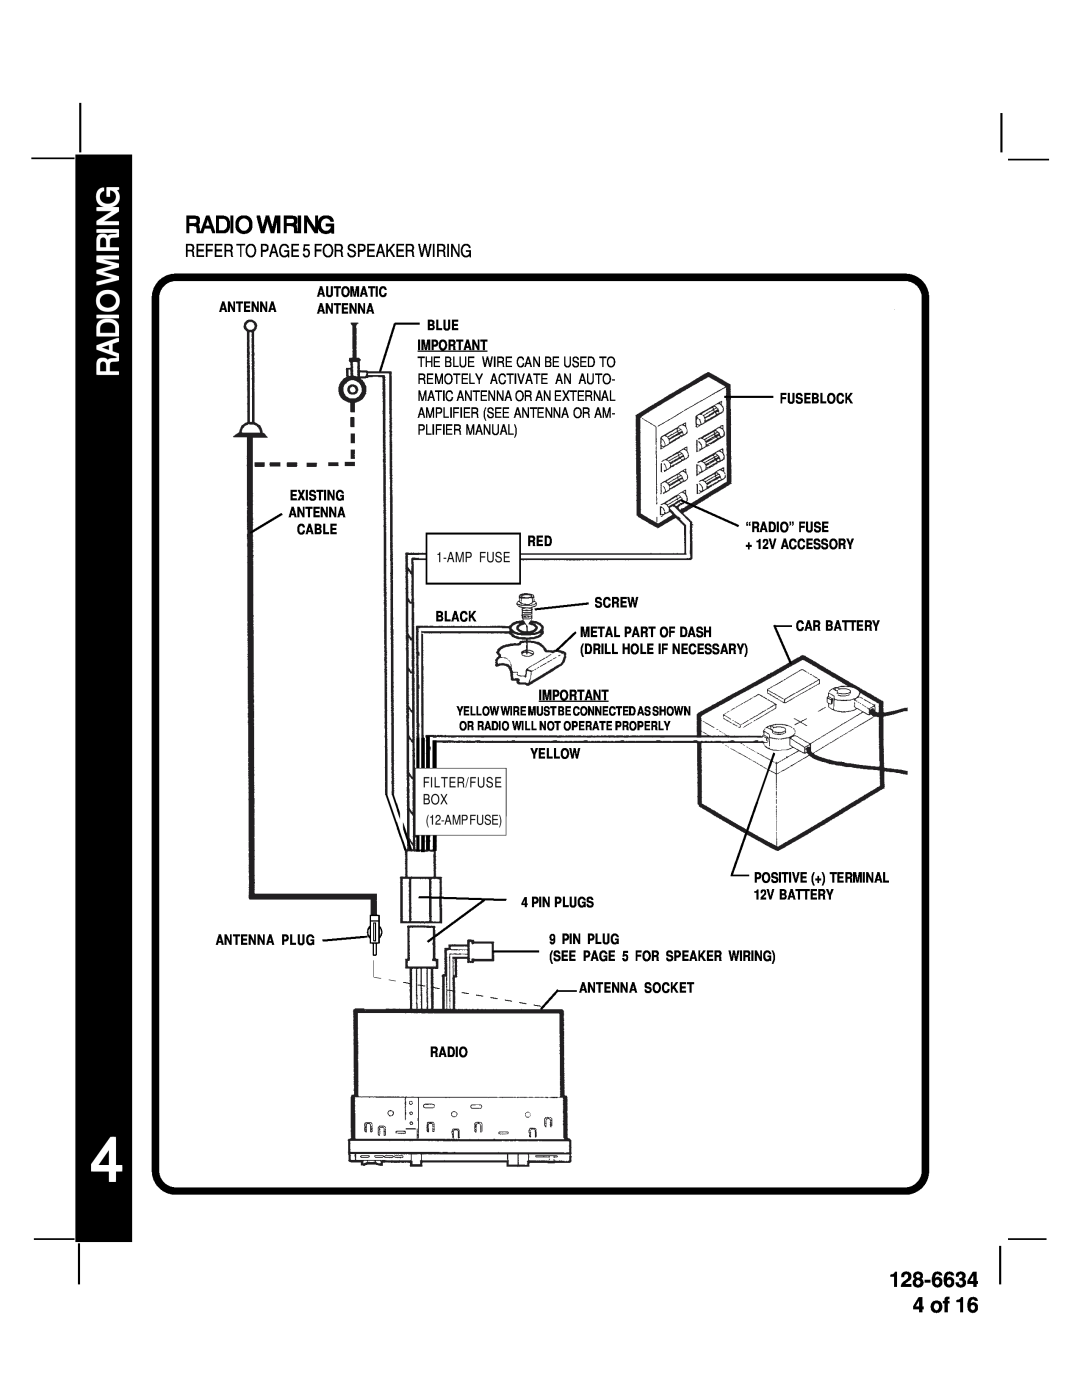 Audiovox AV-428V manual Radio Wiring, 128-6634 4 of 